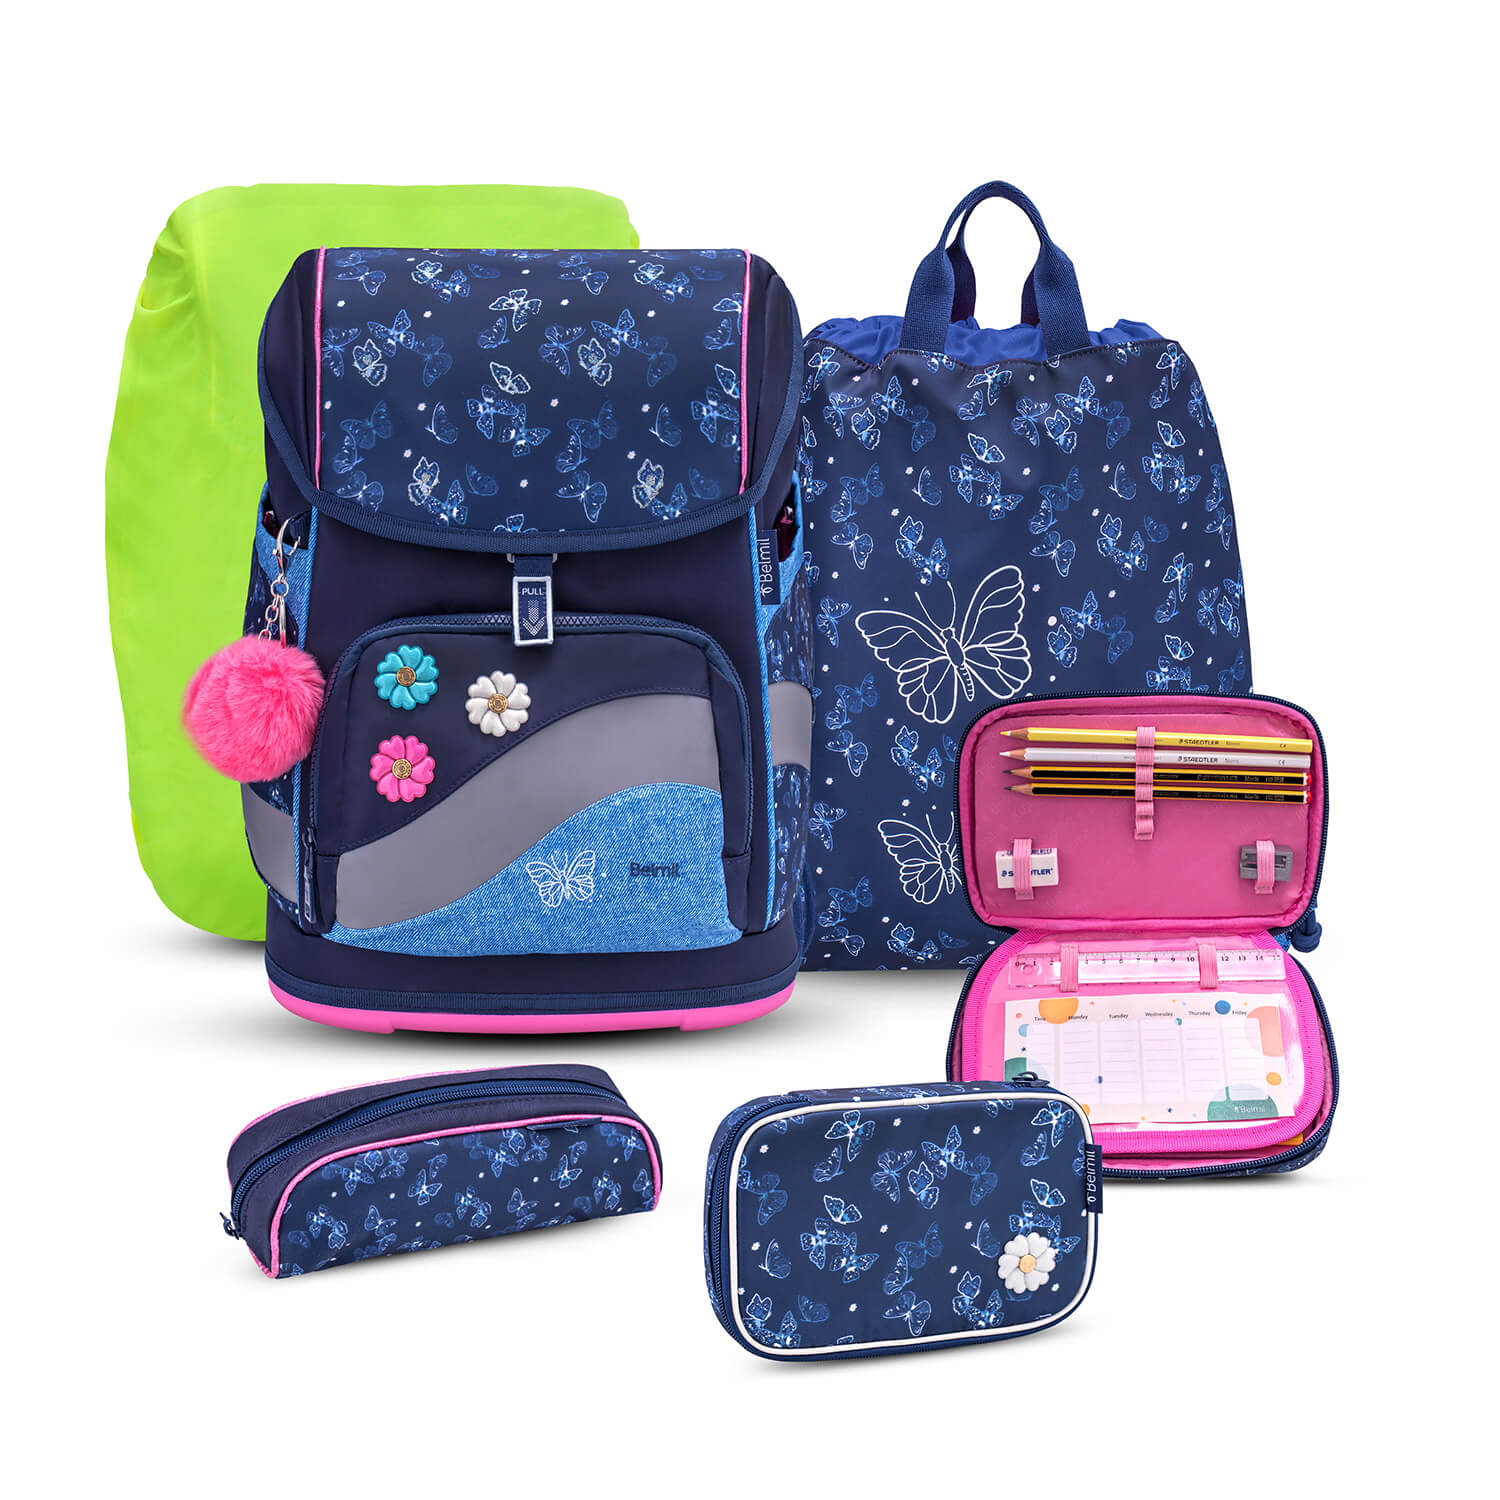 Smarty Plus Sapphire Schoolbag set 6pcs.